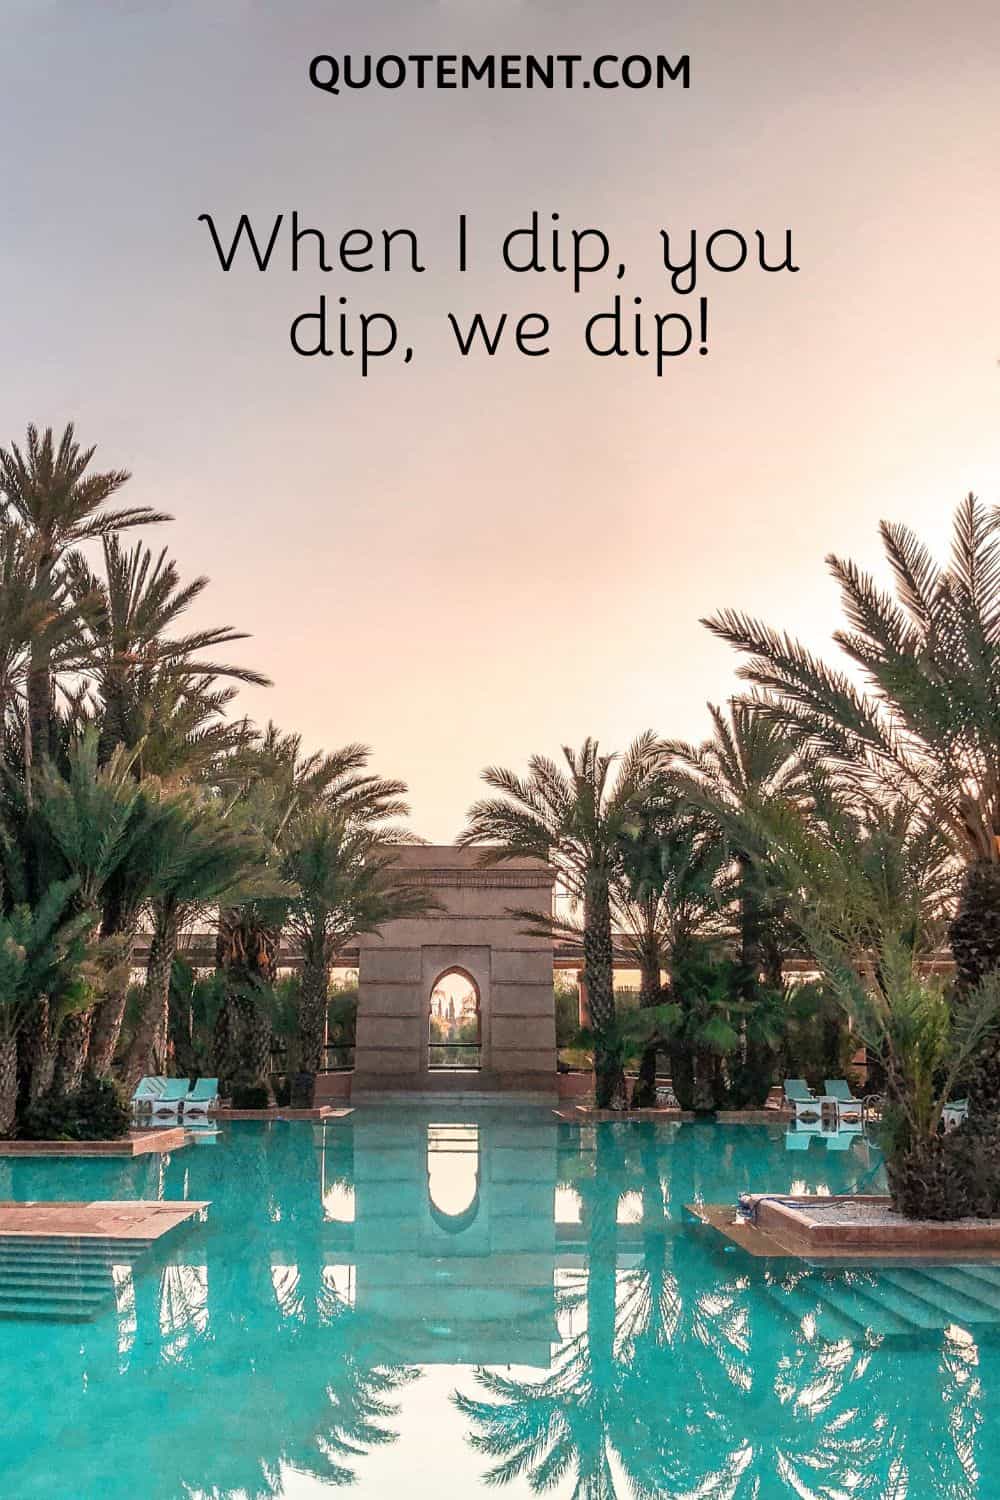 When I dip, you dip, we dip!